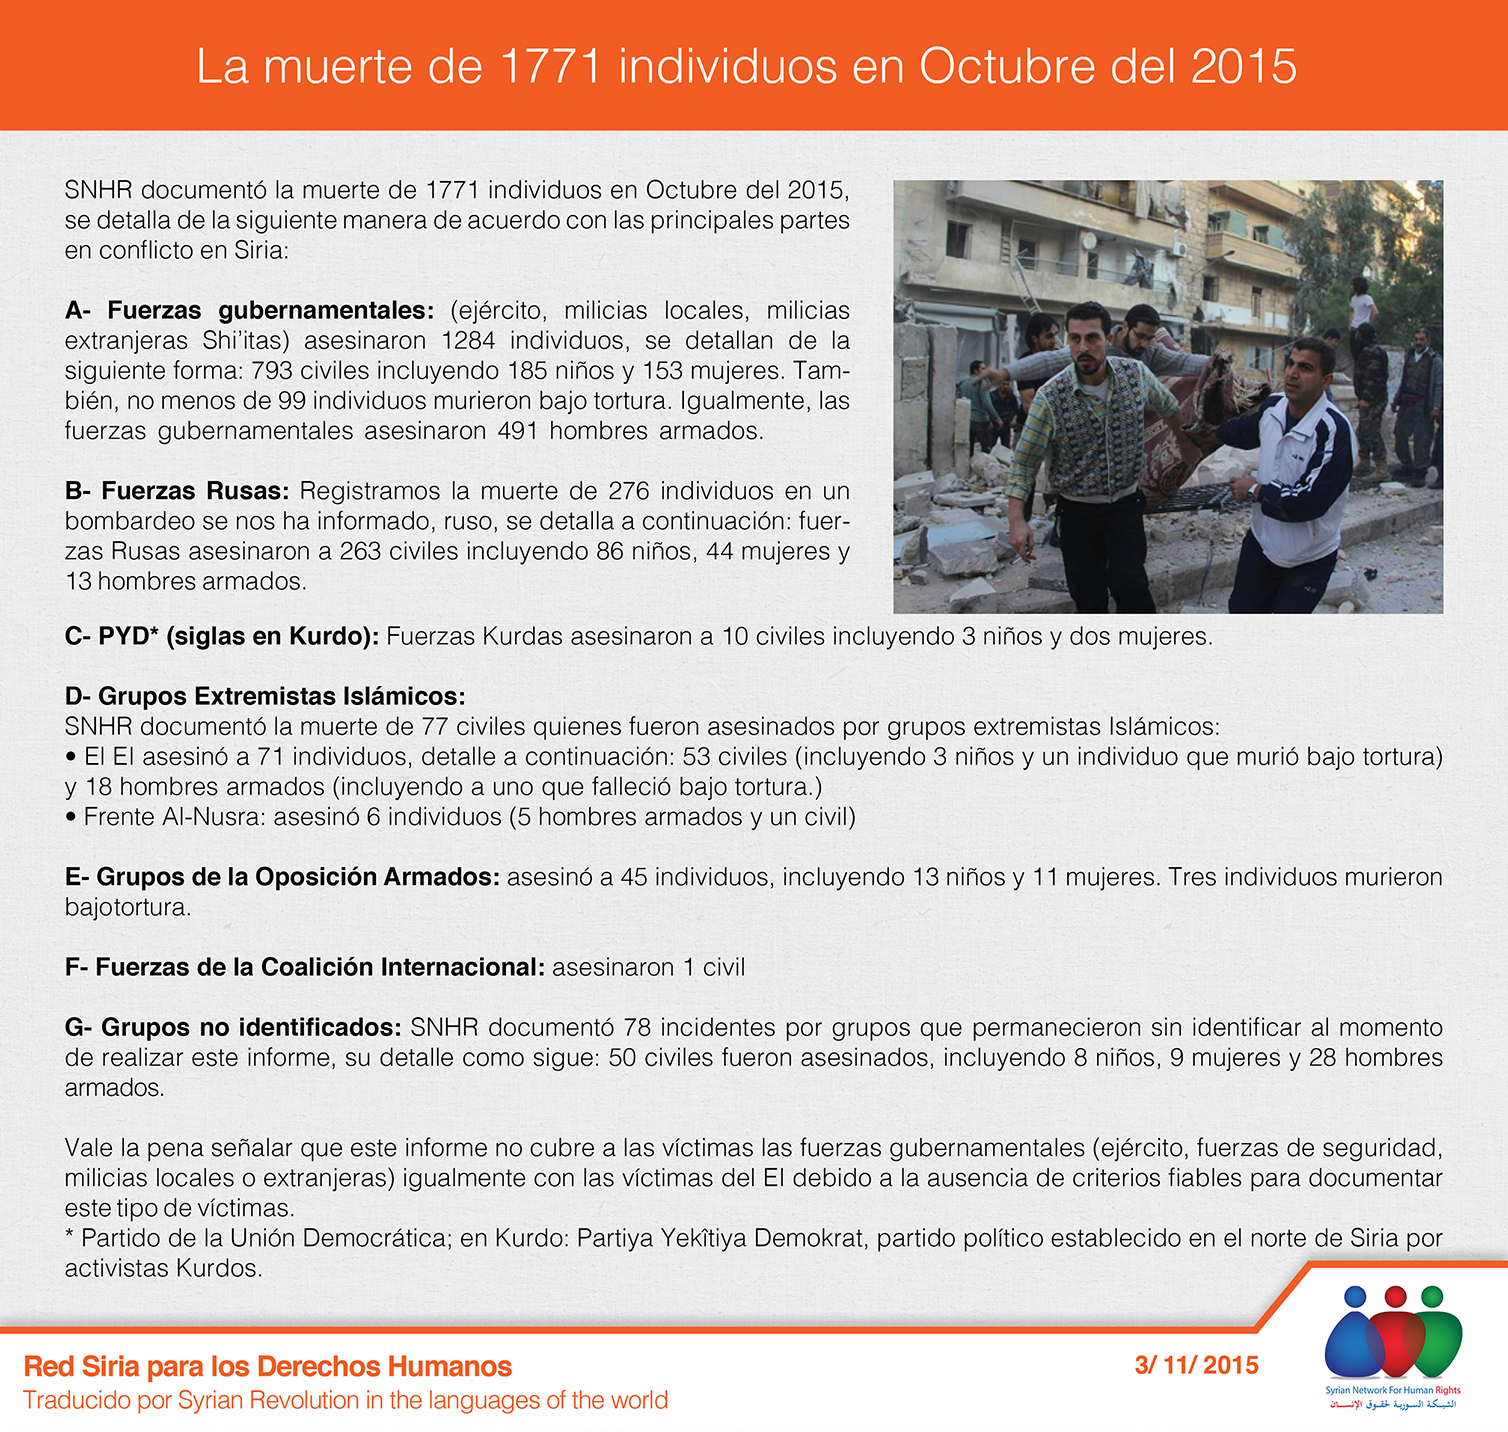 La muerte de 1771 individuos en Octubre del 2015